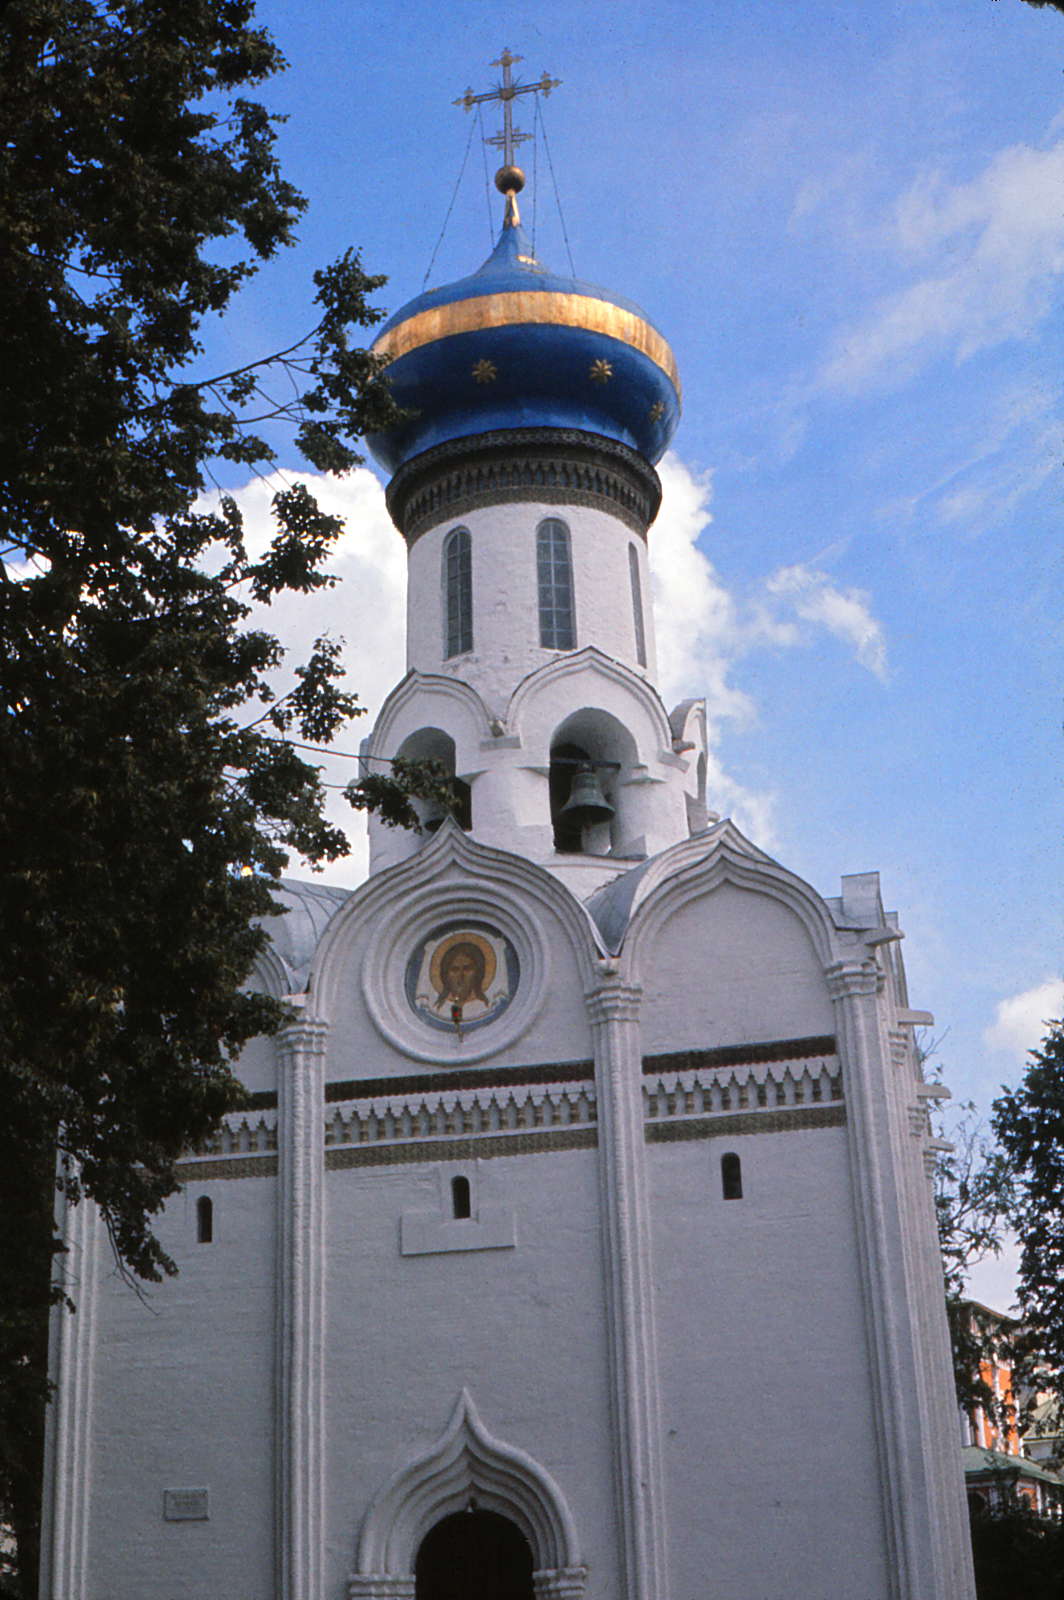 Zagorsk